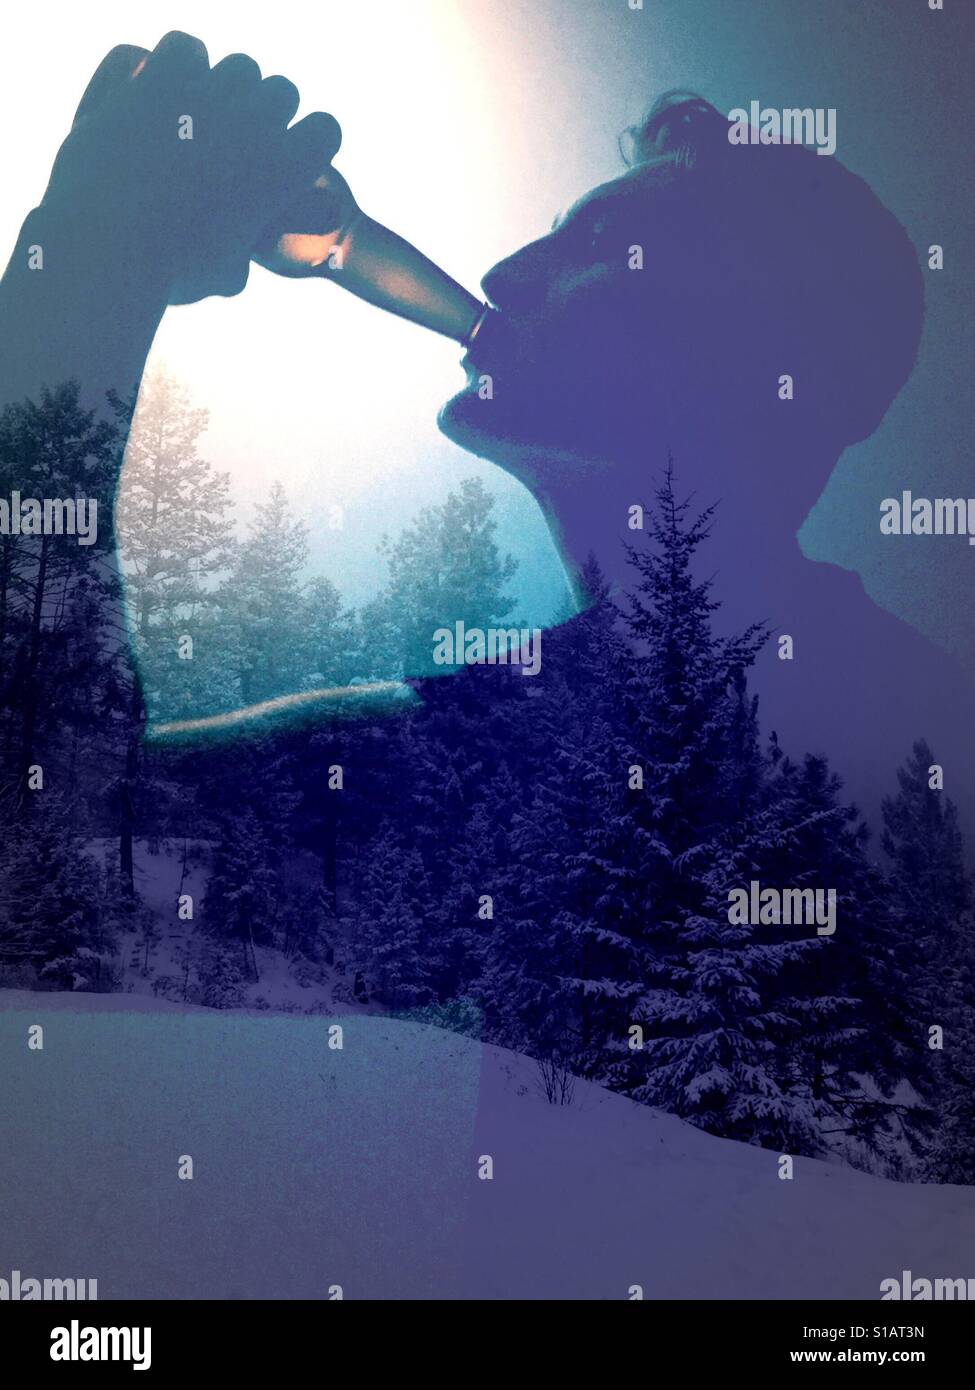 Doppelbelichtung Bild des jungen Mannes ein kaltes Getränk aus einer Flasche und Schnee bedeckt Bäume. Stockfoto